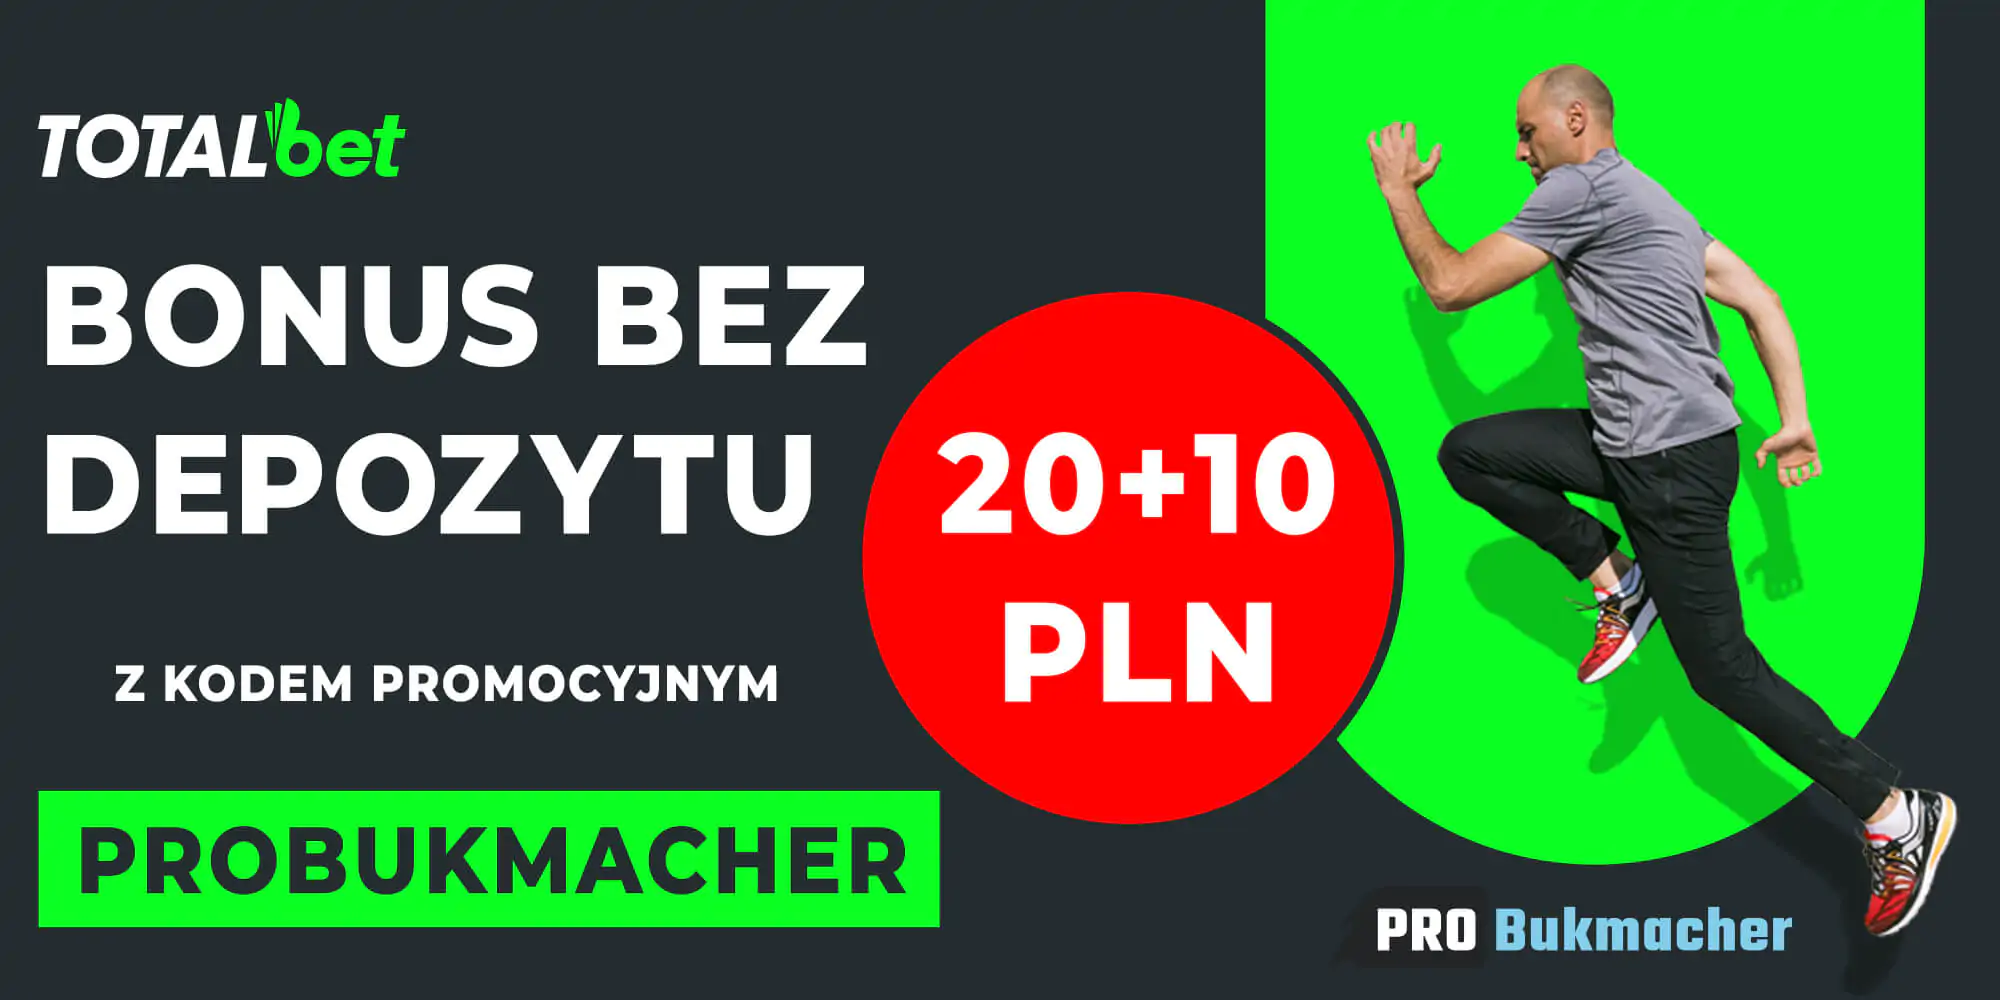 Kod Promocijny Probukmacher daje Bonus bez depozytu 20+10 PLN w Fortunie